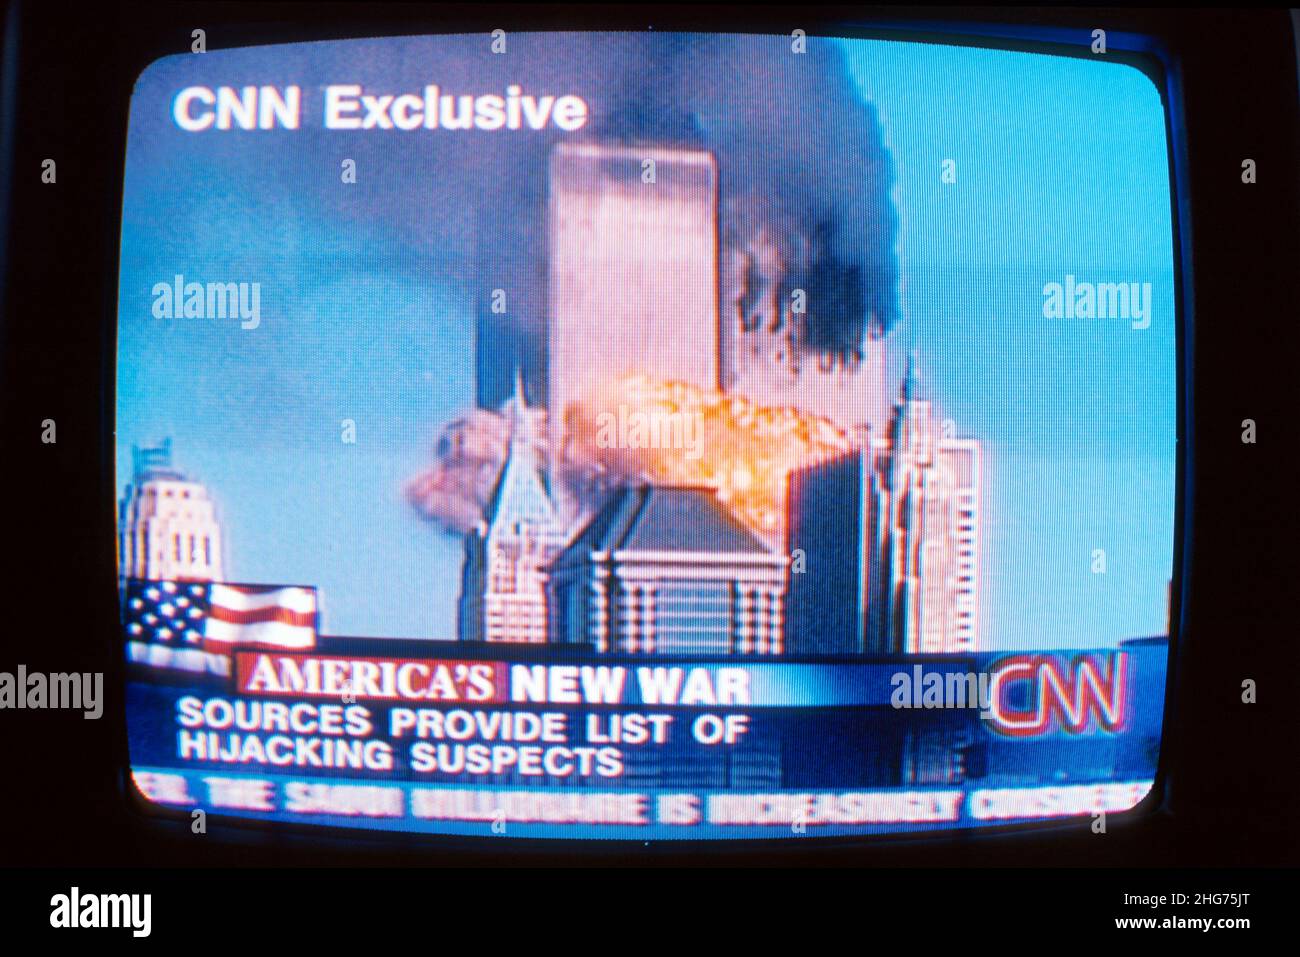 New York City, NY NYC Lower Manhattan, TV écran 9 1 1 911, terrorisme attaque incendiée World Trade Center centre, CNN Ground Zero septembre 11 11 Banque D'Images